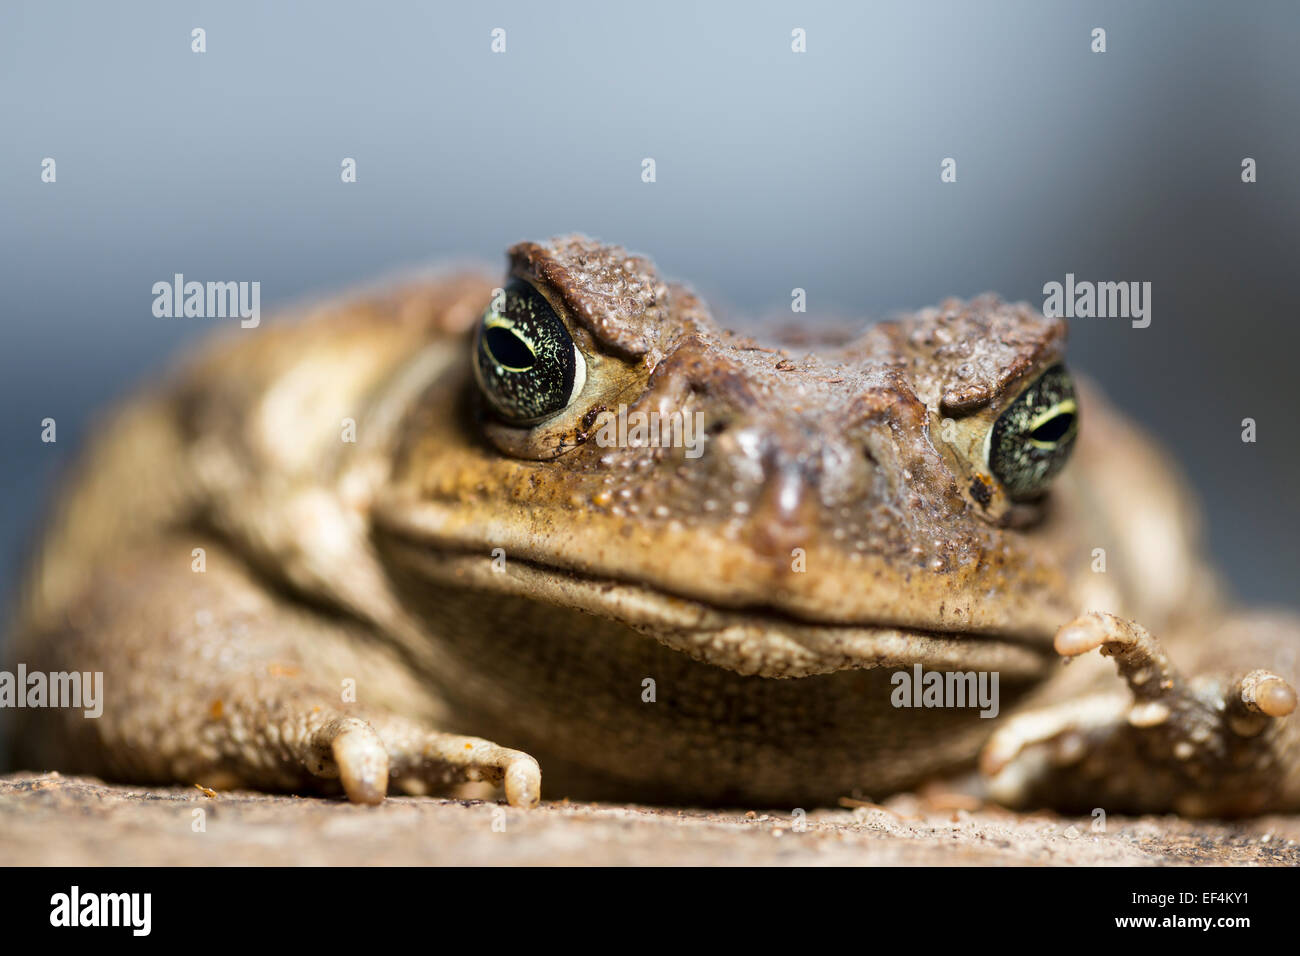 Wildlife : Cane toad – (Rhinella marina) formerly (Bufo marinus). Stock Photo